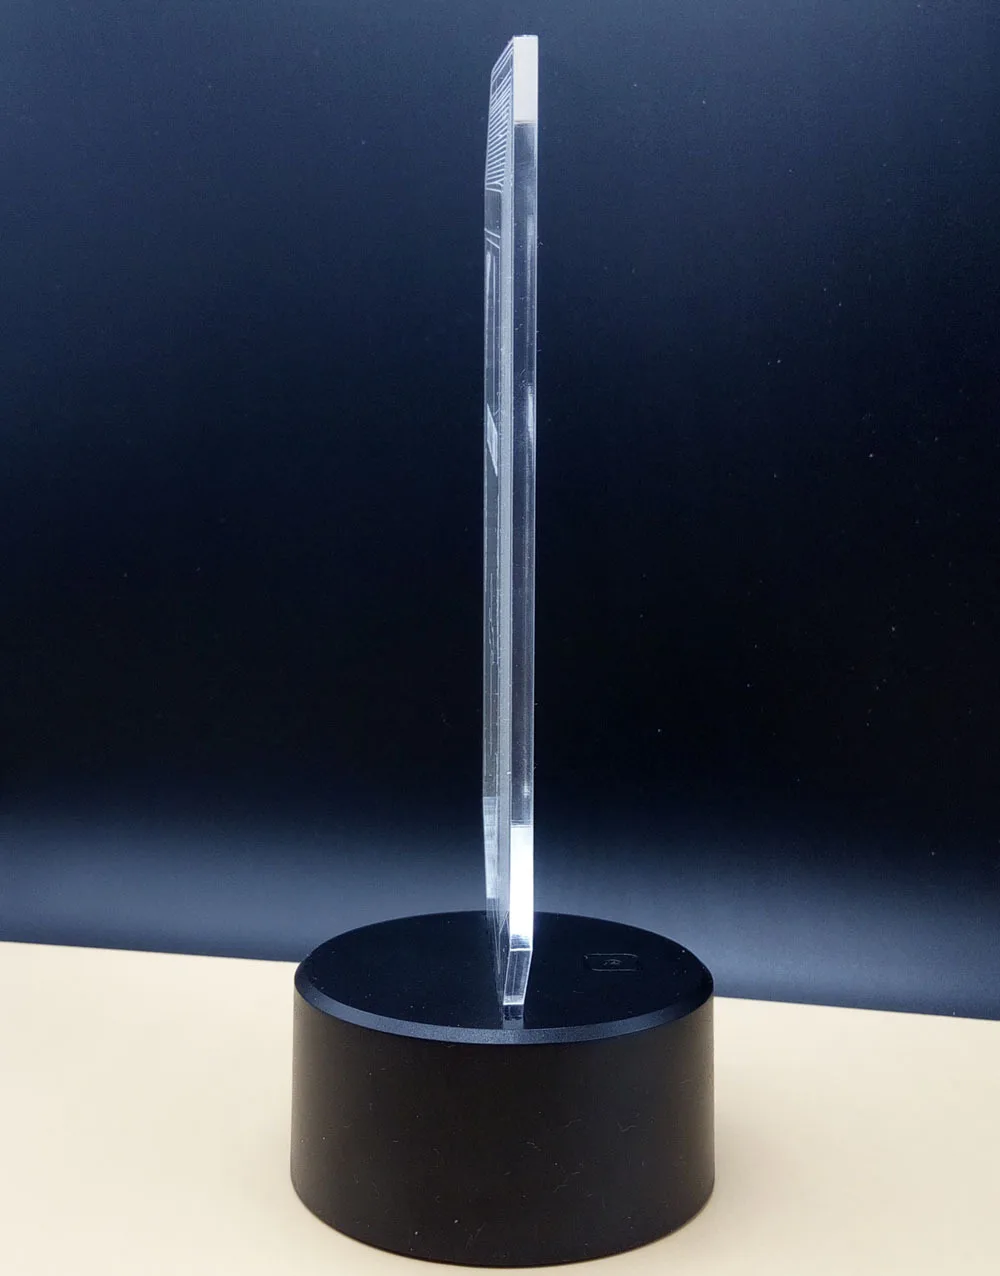 3D DNA модель светодиодный ночник горячая Распродажа ABS сенсорная база 7 цветов меняющий абстрактное настроение светодиодный светильник Настольная Иллюзия для домашнего декора